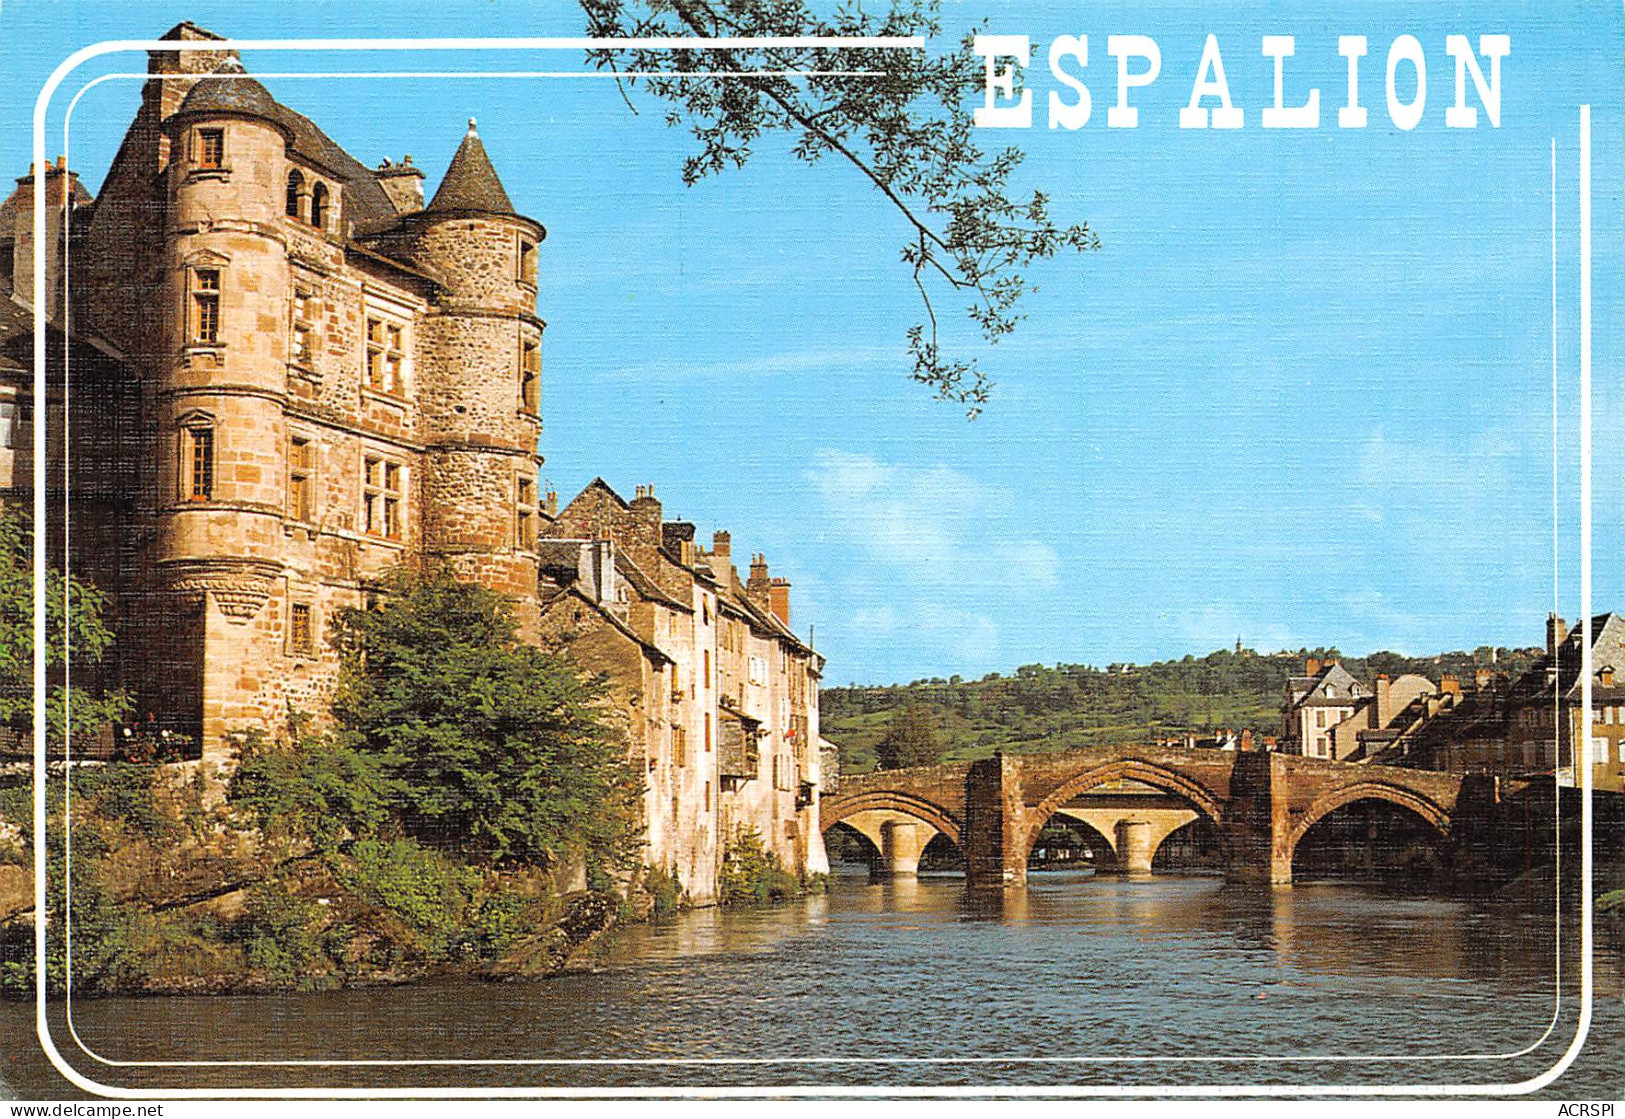 12  ESPALION  Le Chateau Et Le Vieux Pont   15 (scan Recto Verso)MH2999 - Espalion